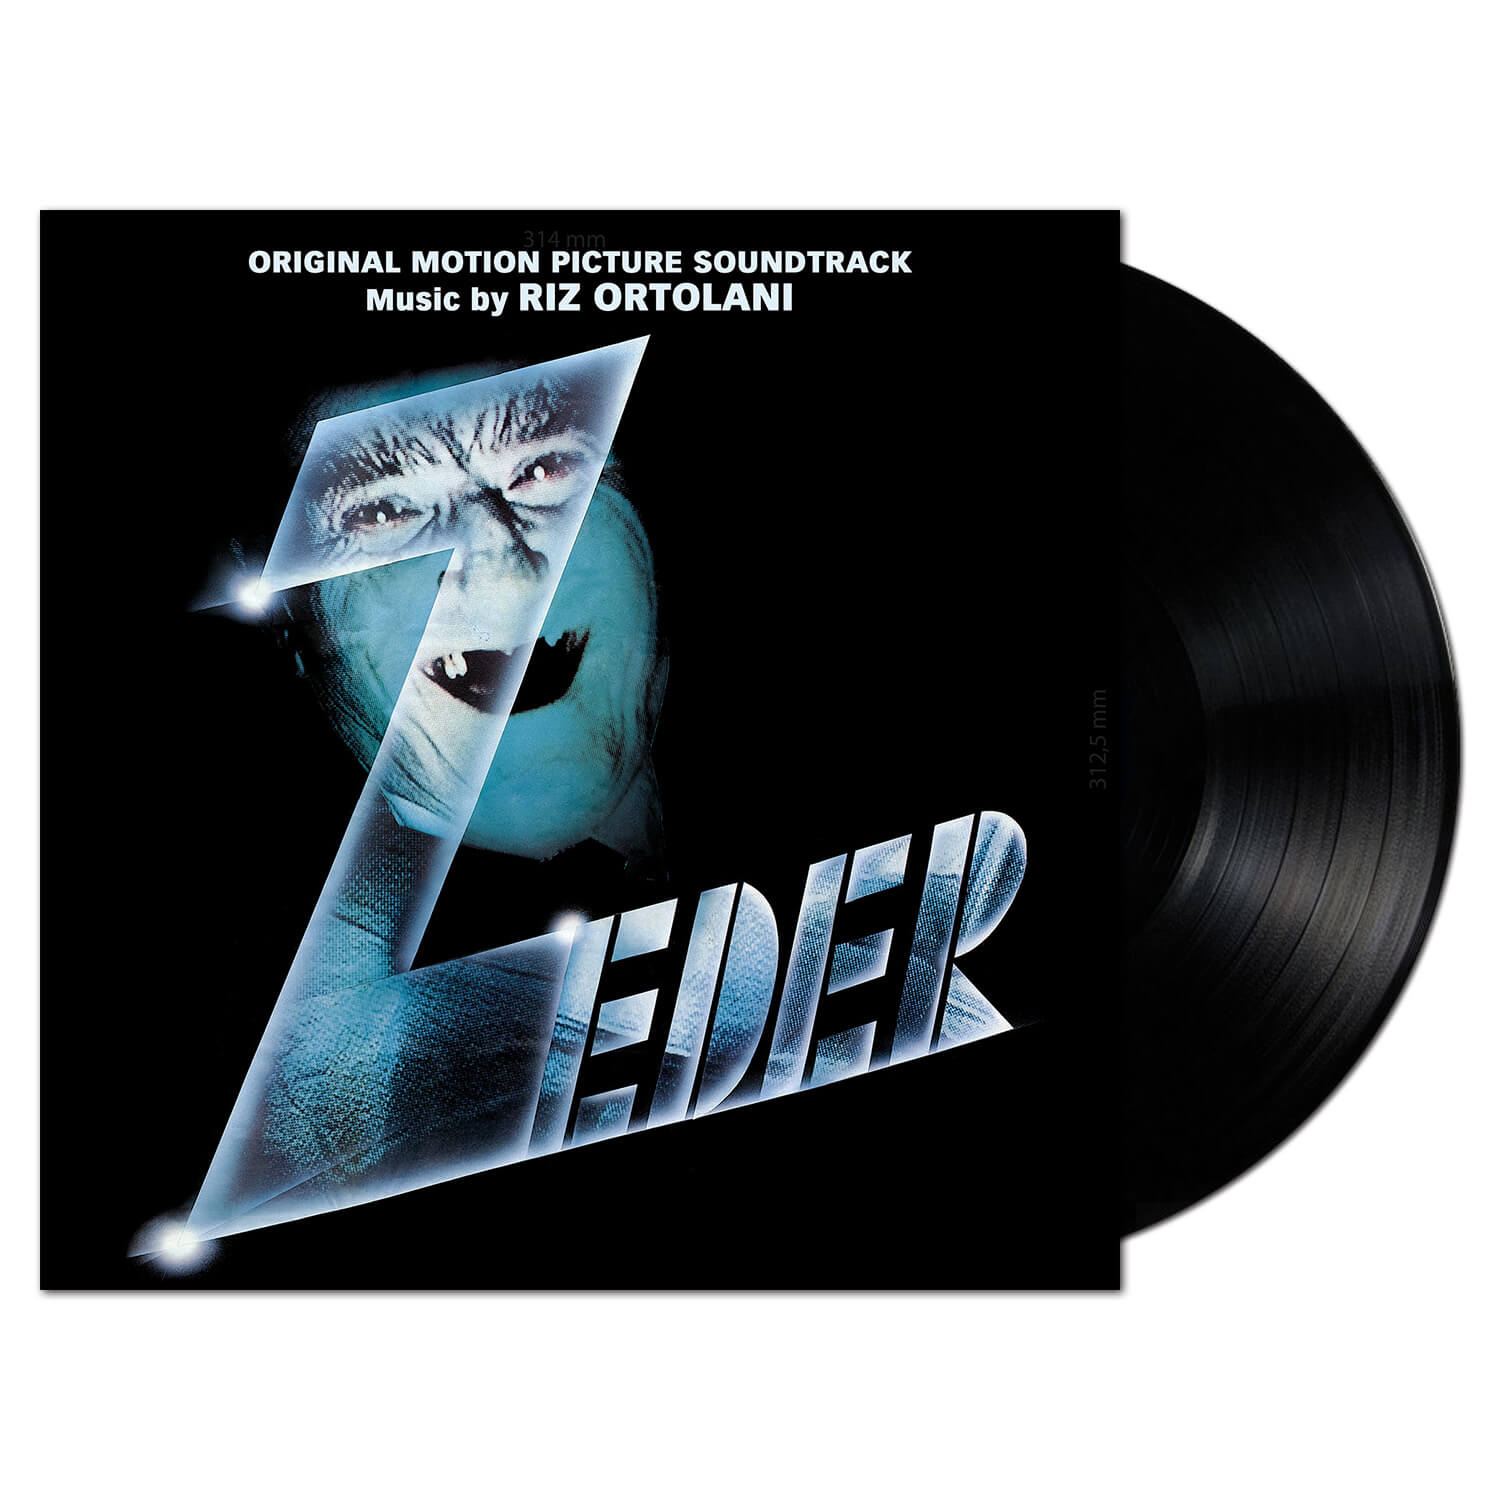 Cinevox - Zeder Vinyl